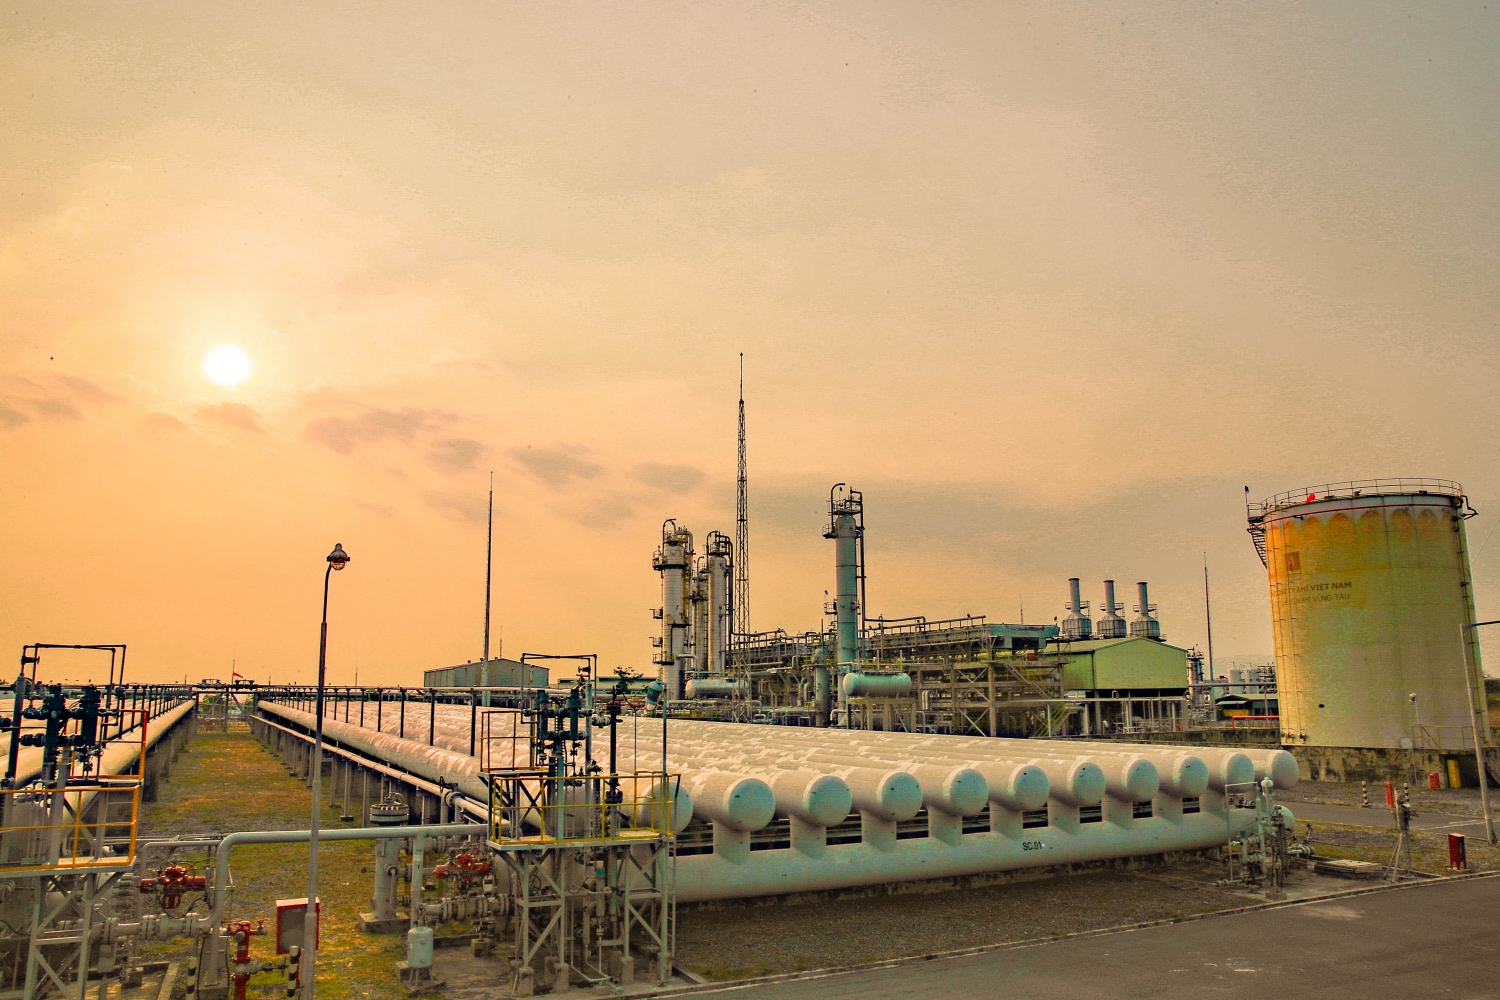 Nhà máy Xử lý khí Dinh Cố do KVT quản lý và điều hành